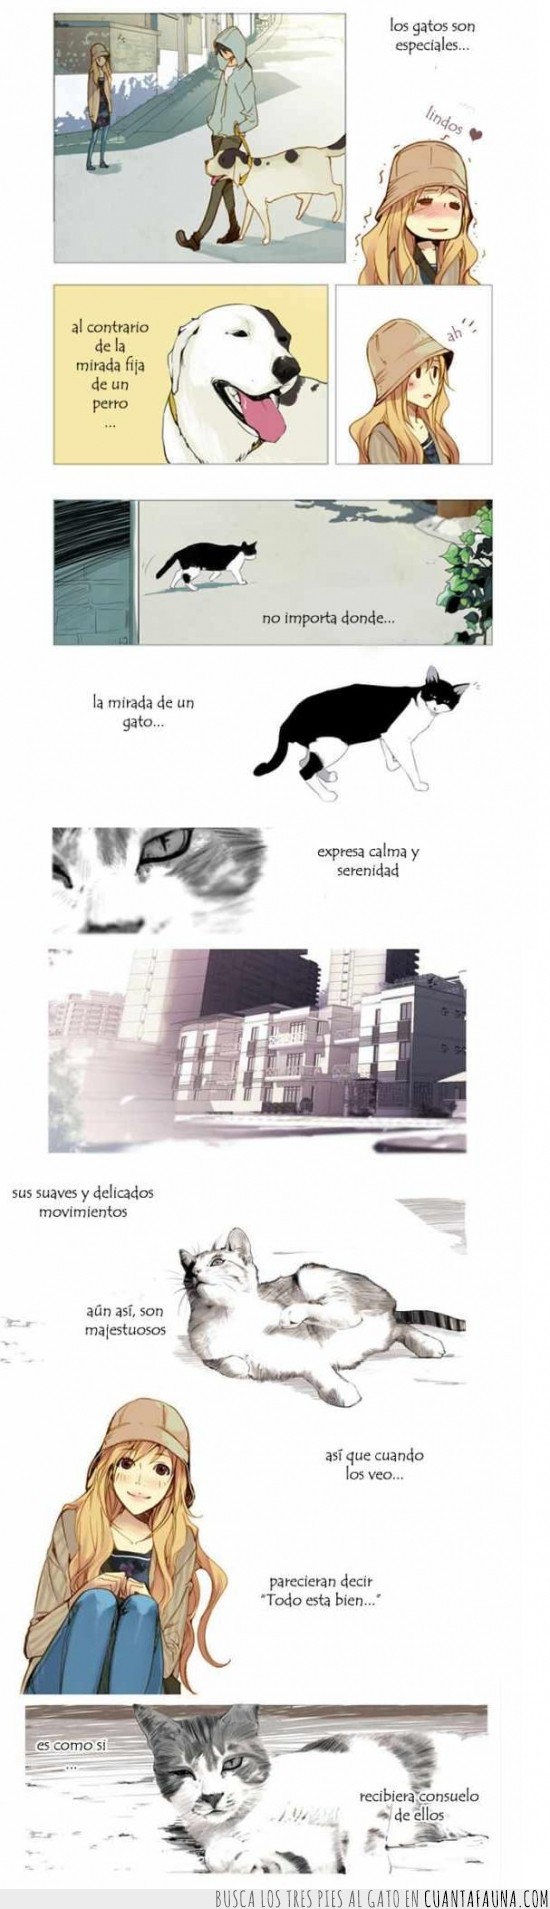 3775 - La verdadera razón de porque nos gustan tanto los gatos